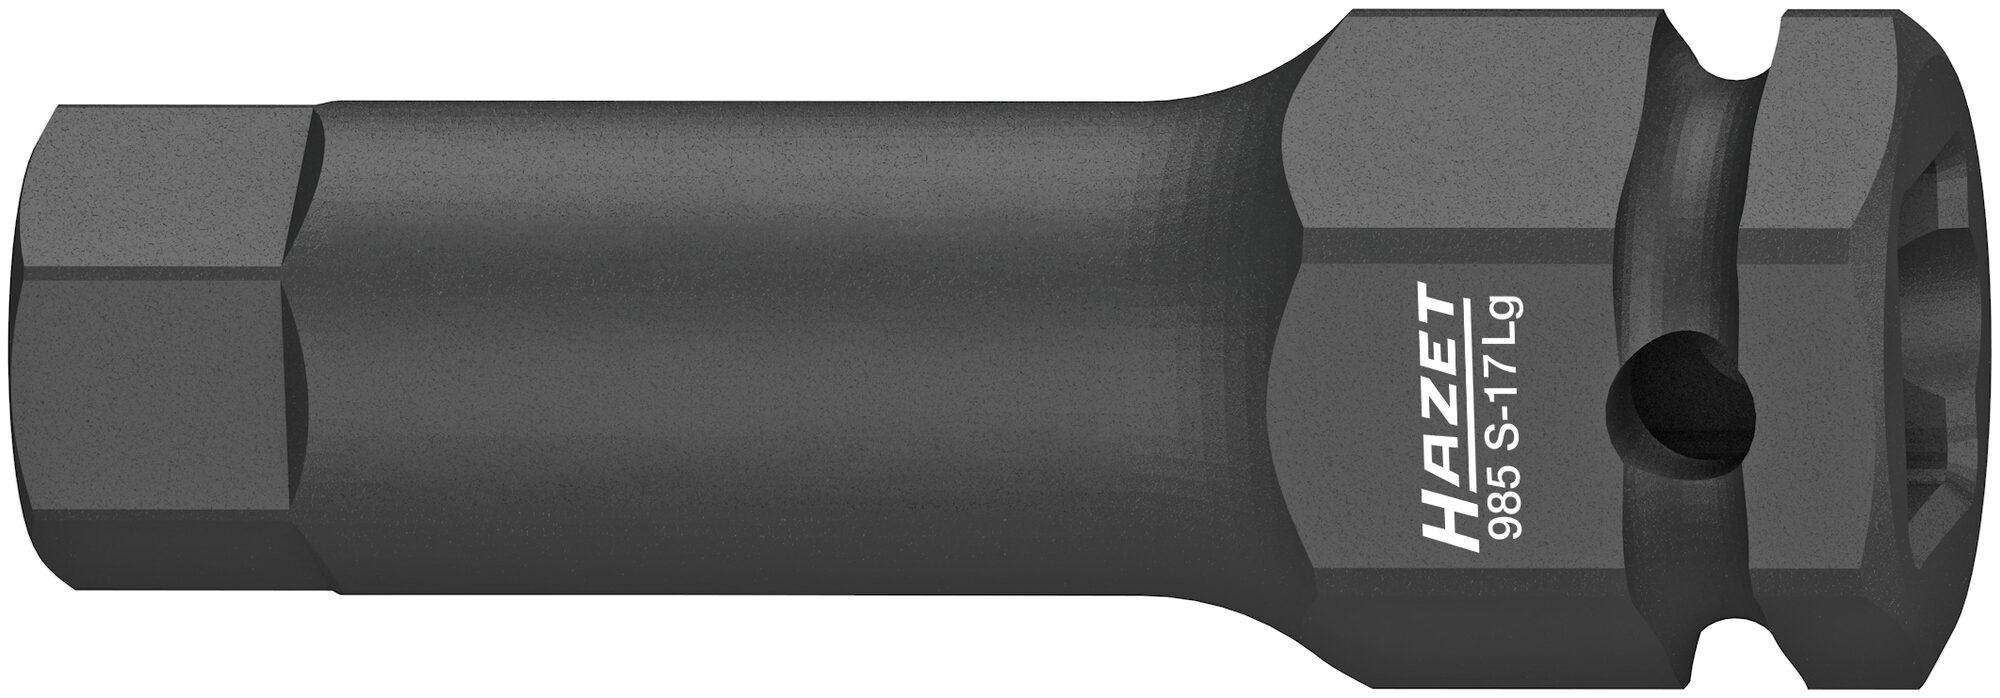 HAZET Schlag-, Maschinenschrauber Schraubendreher-Steckschlüsseleinsatz 985S-17LG · Vierkant hohl 12,5 mm (1/2 Zoll) · Innen Sechskant Profil · 17 mm